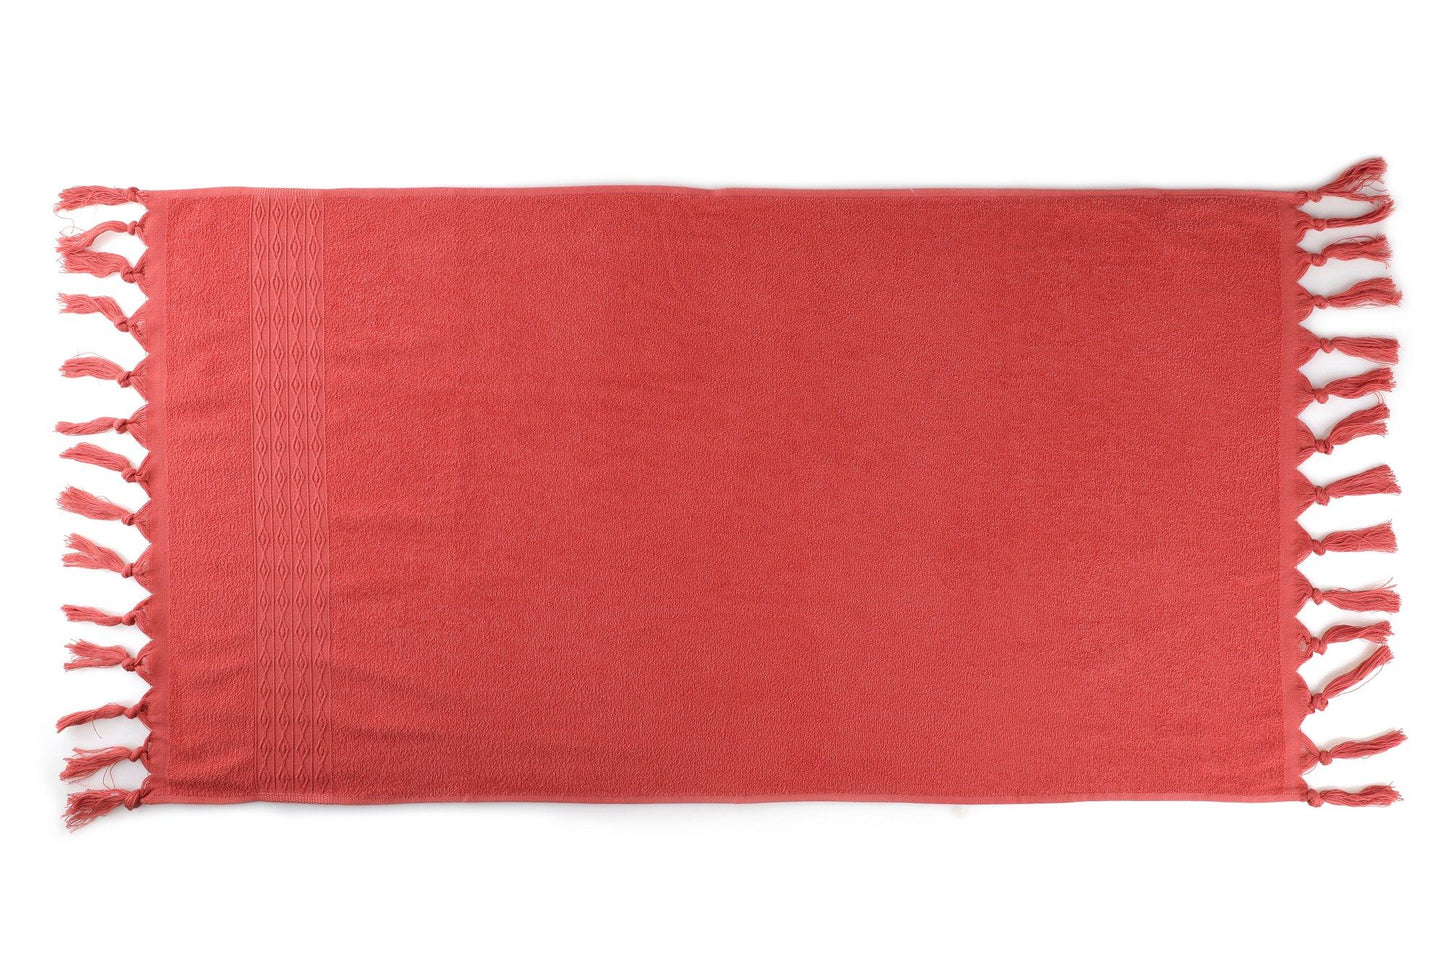 Terma - Tile Red - Bath Towel Set (2 Pieces)